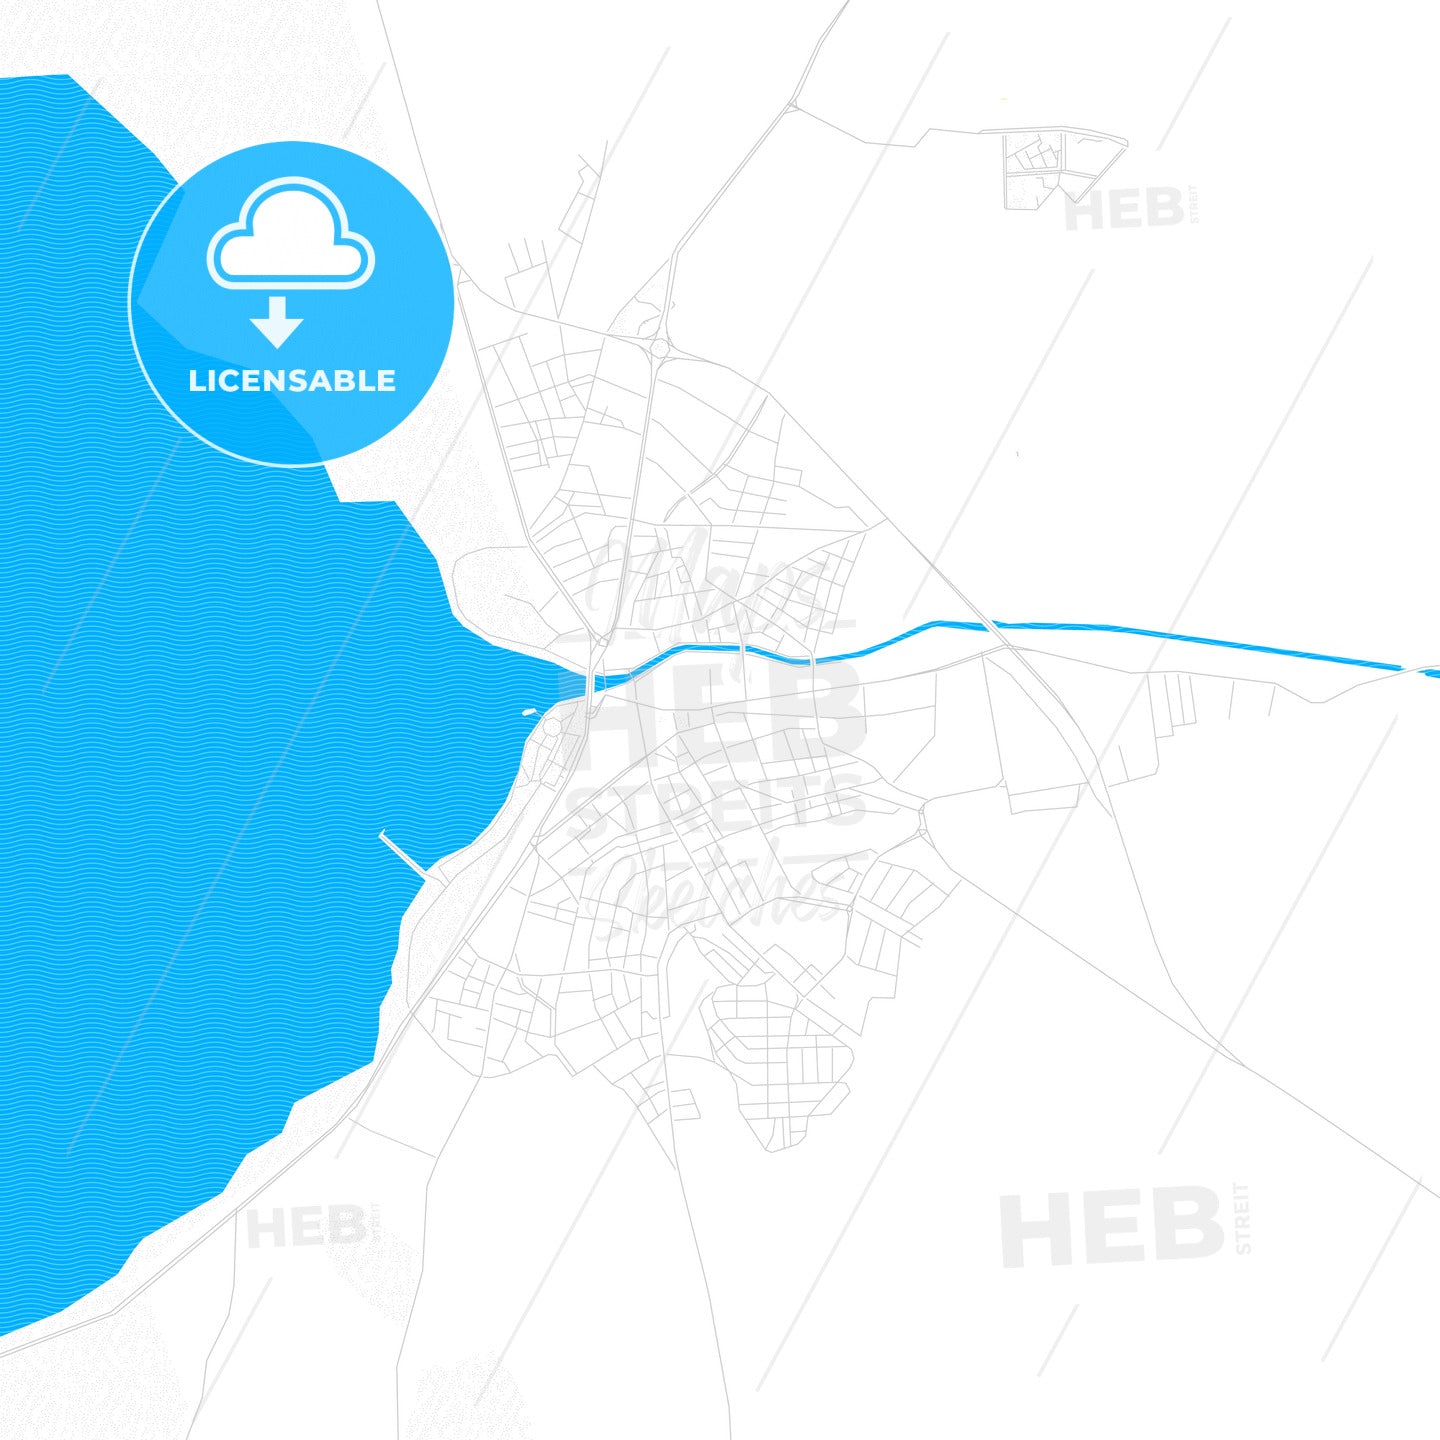 Beyşehir, Turkey PDF vector map with water in focus